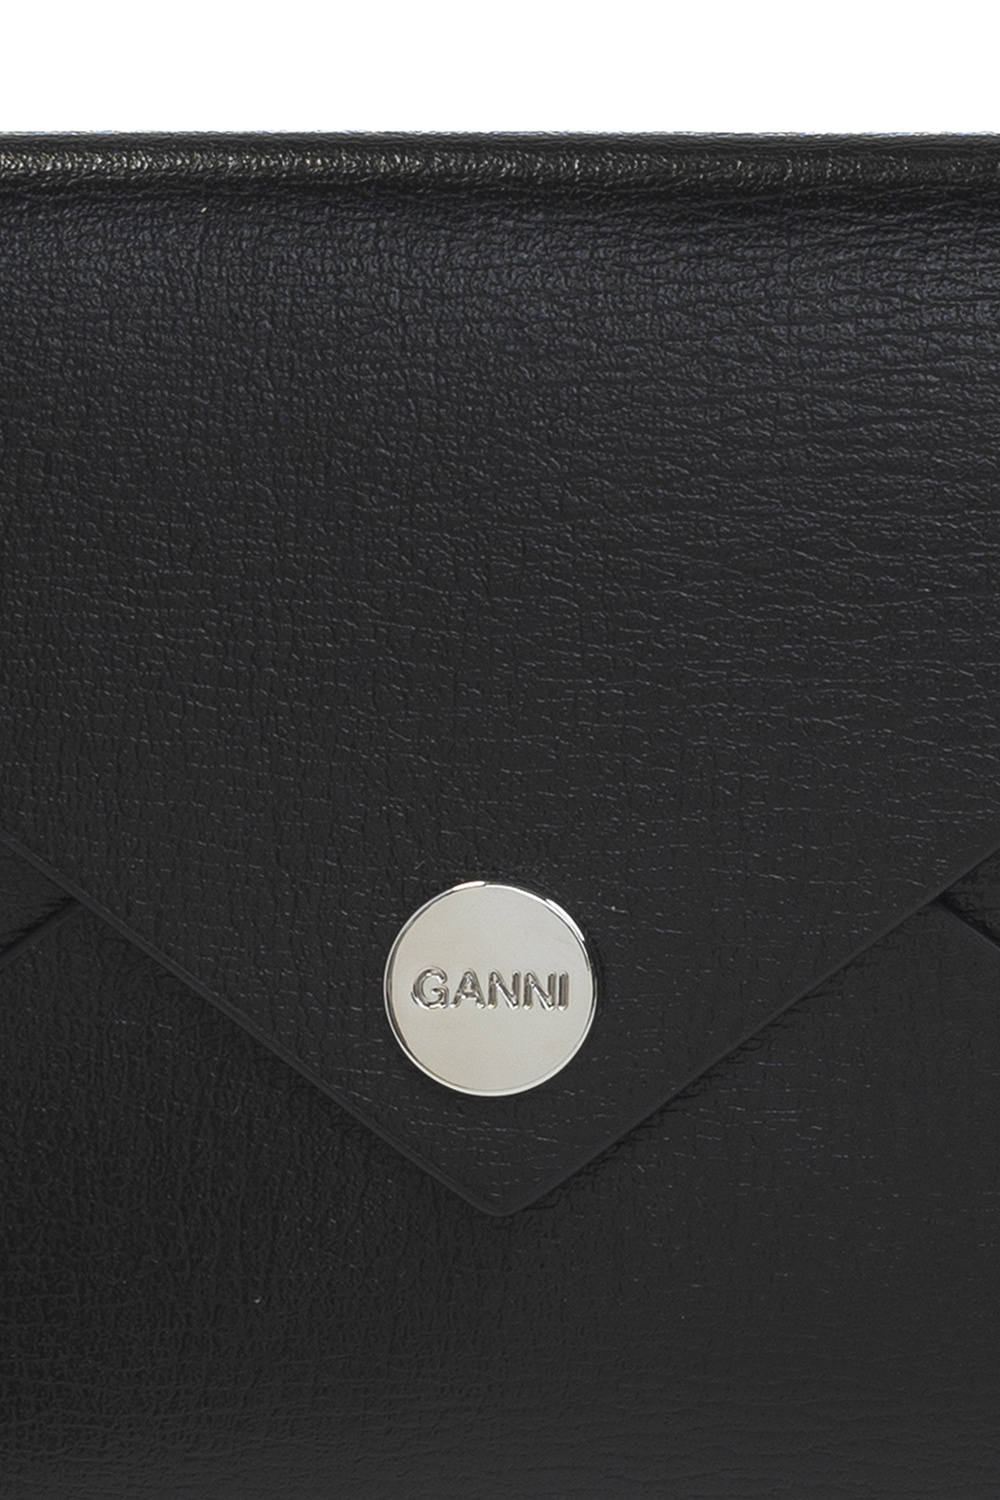 Ganni Card case